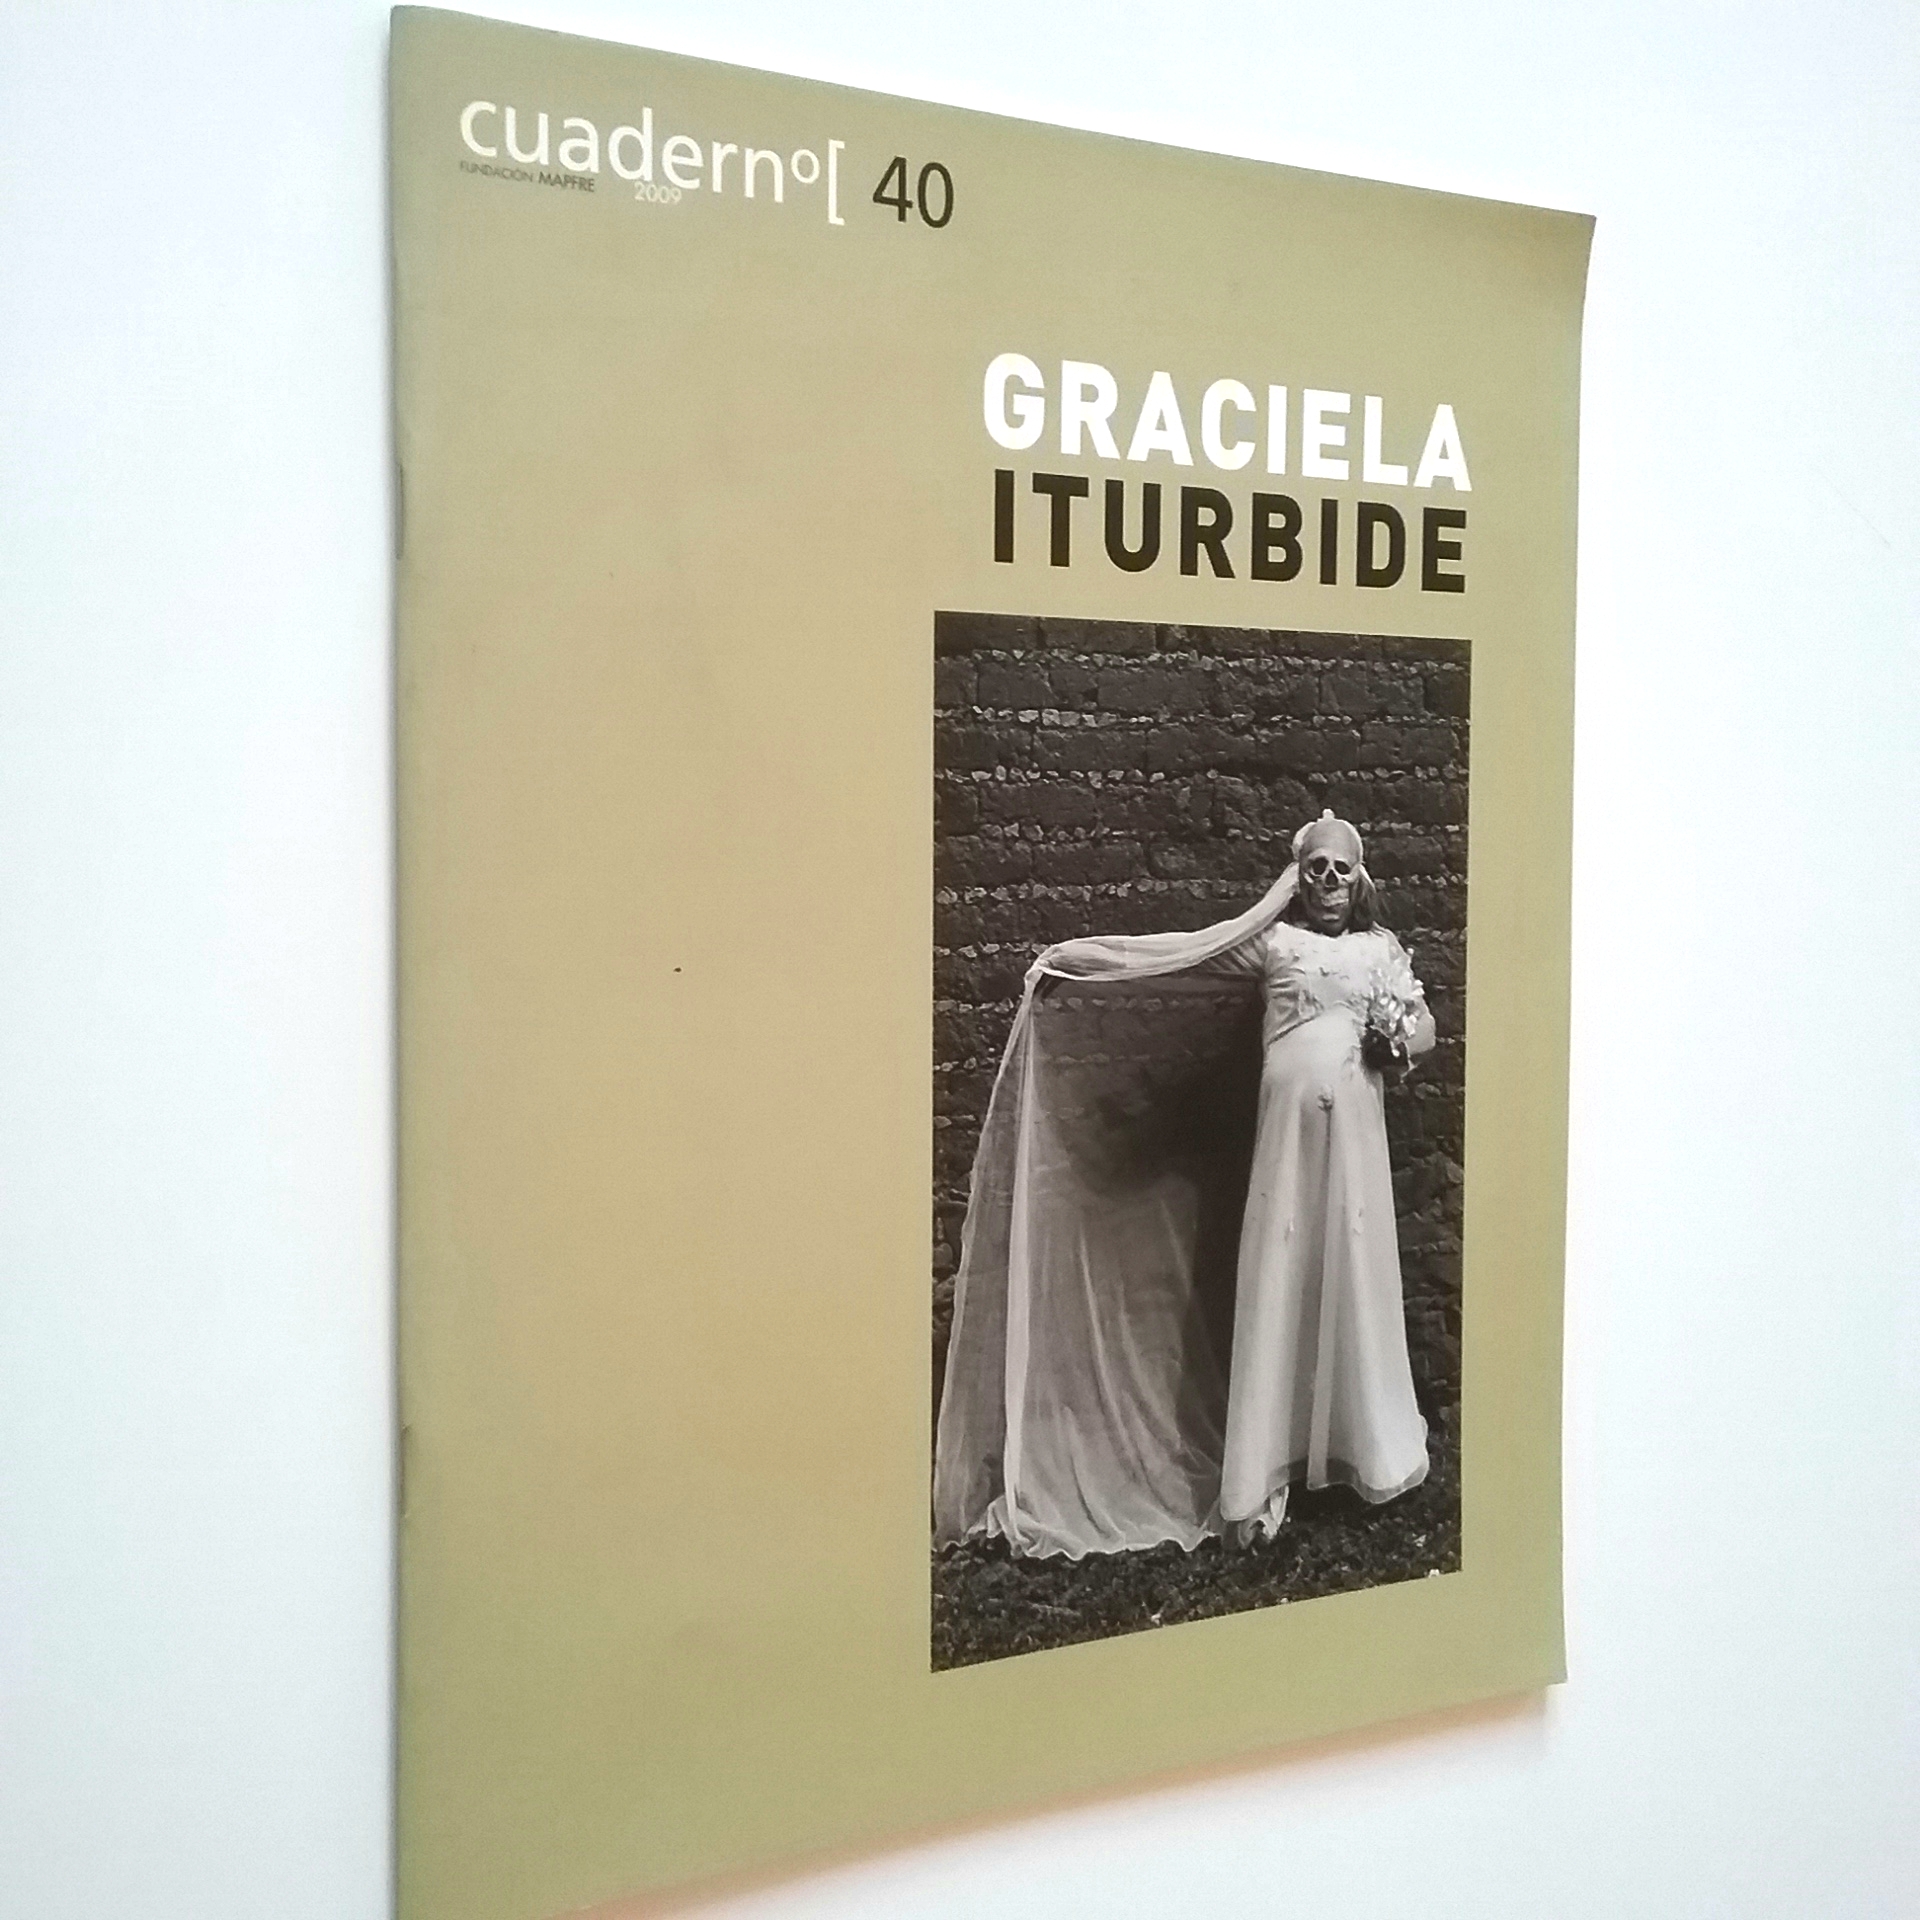 Graciela Iturbide (Fundación Mapfre, cuadernº[40) - VV. AA.